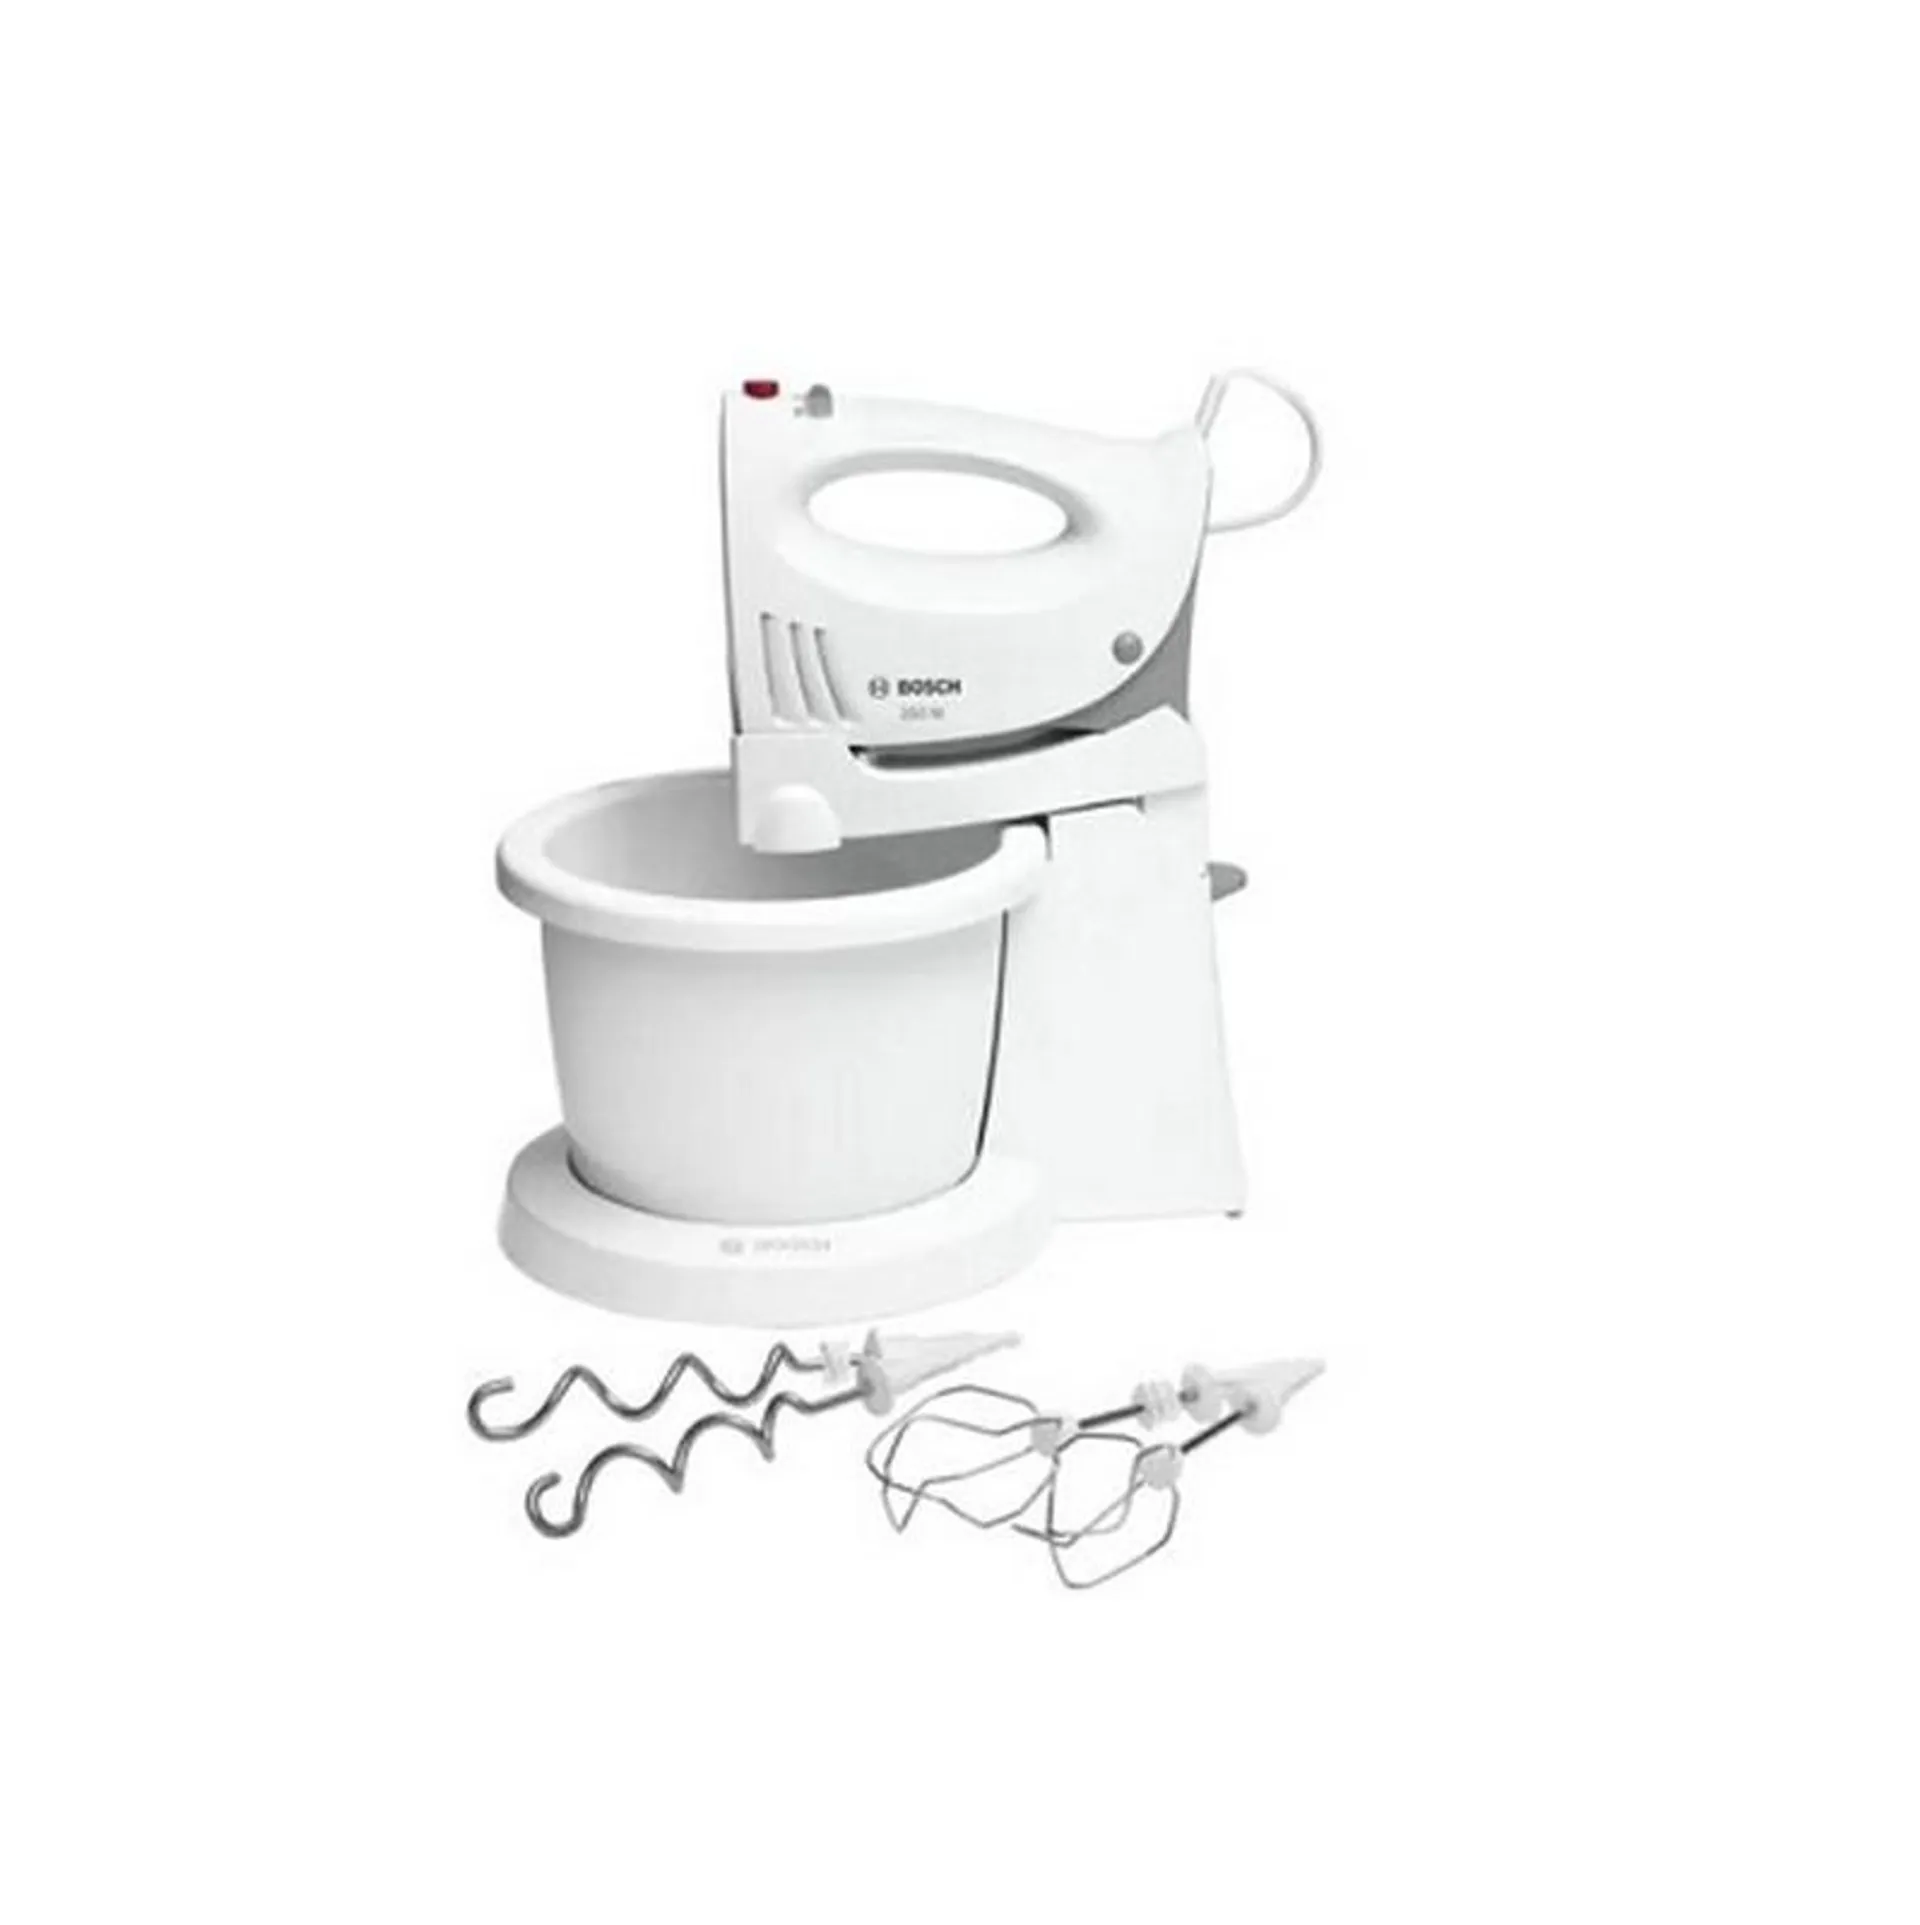 Bosch Hand Mixer – White